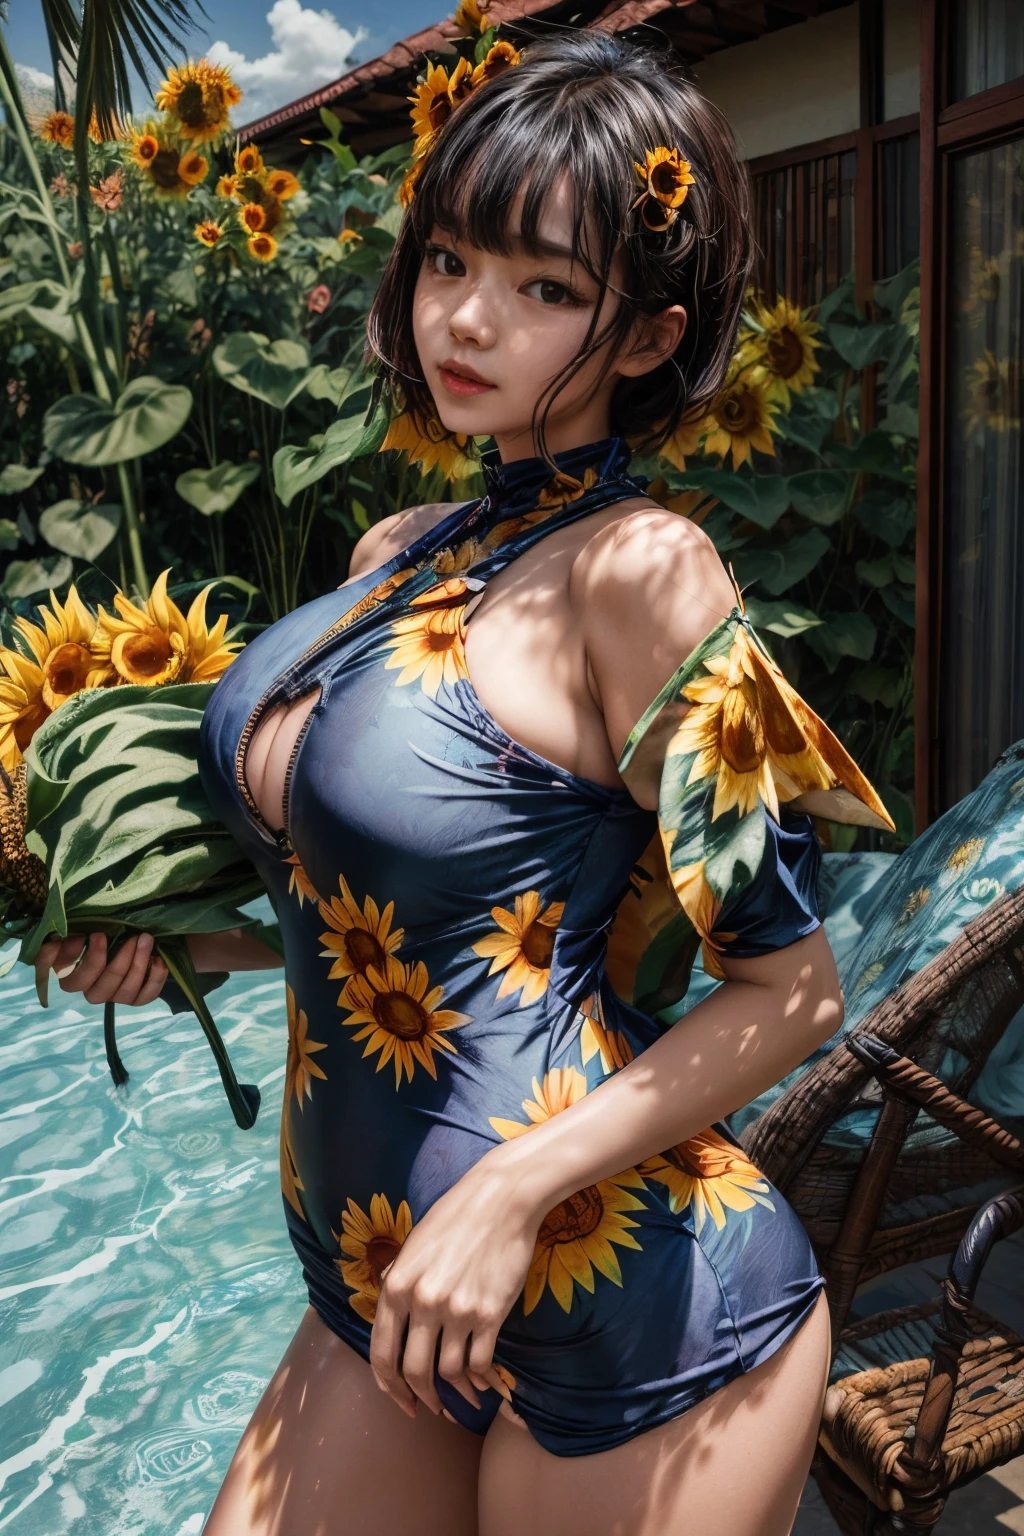 Frau trägt ((1 große Sonnenblume) himmelblauer Einteiler mit Print) Badeanzüge, hoch_Vollbusig